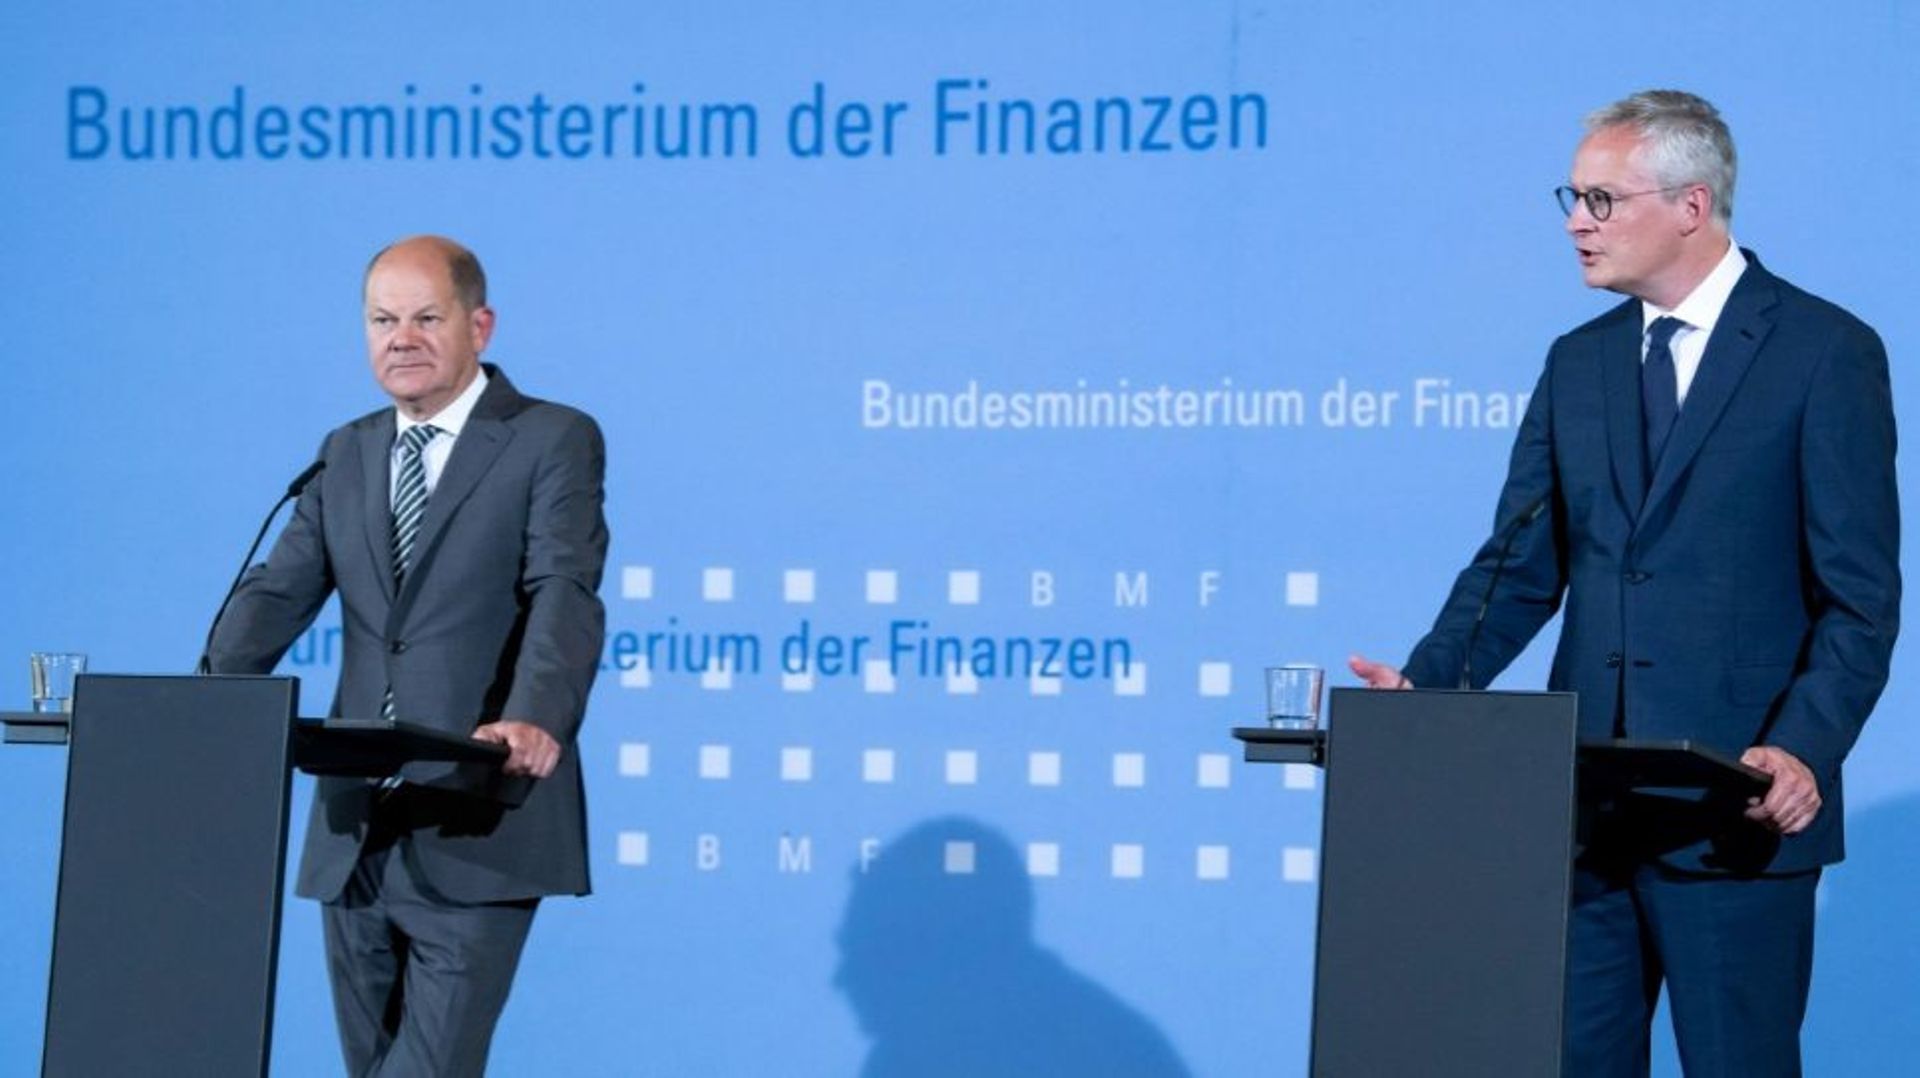 Le ministre français de l'Economie Bruno Le Maire (à droite) et son homologue allemand Olaf Scholz (à gauche) lors d'une conférence de presse à Berlin le 22 juin 2020